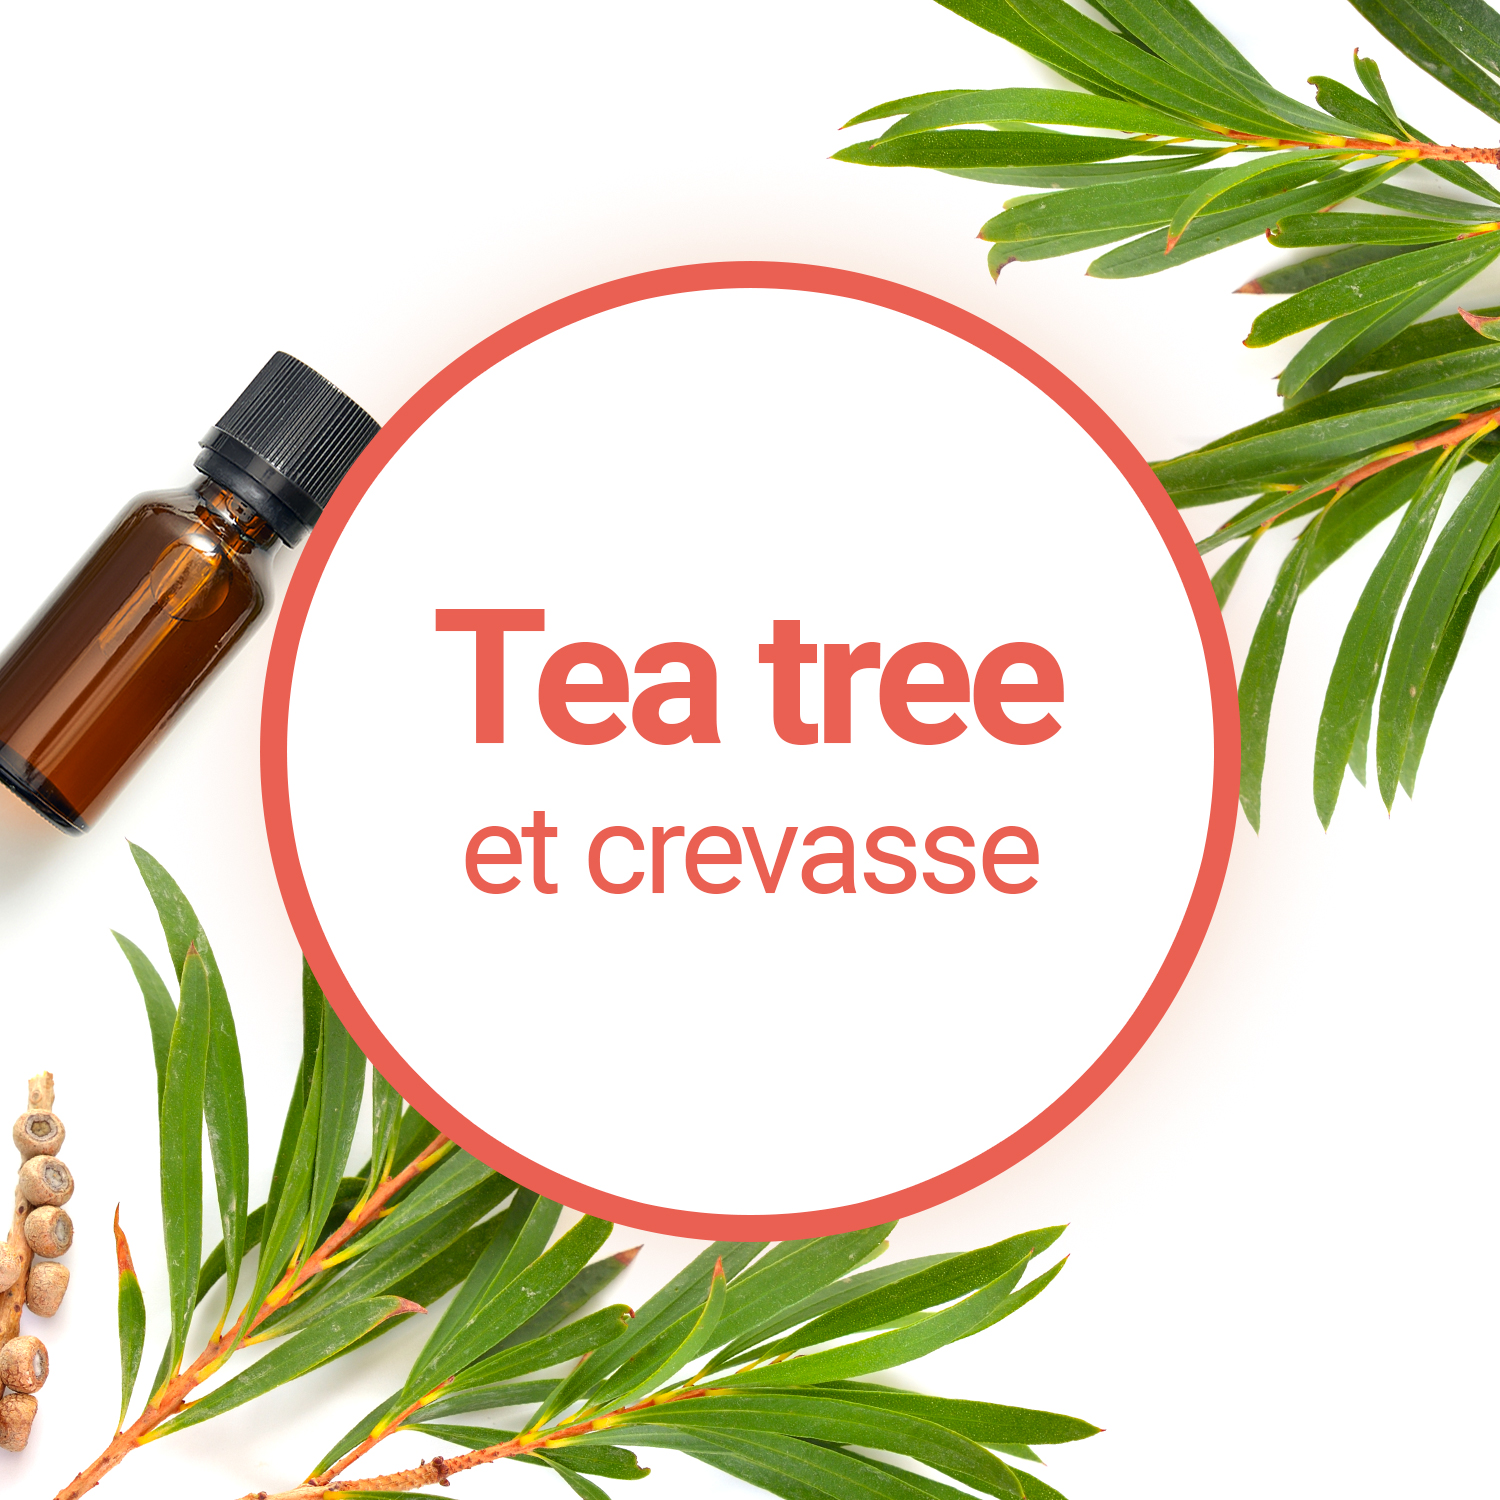 Peut-on utiliser le Tea Tree en cas de crevasse ?